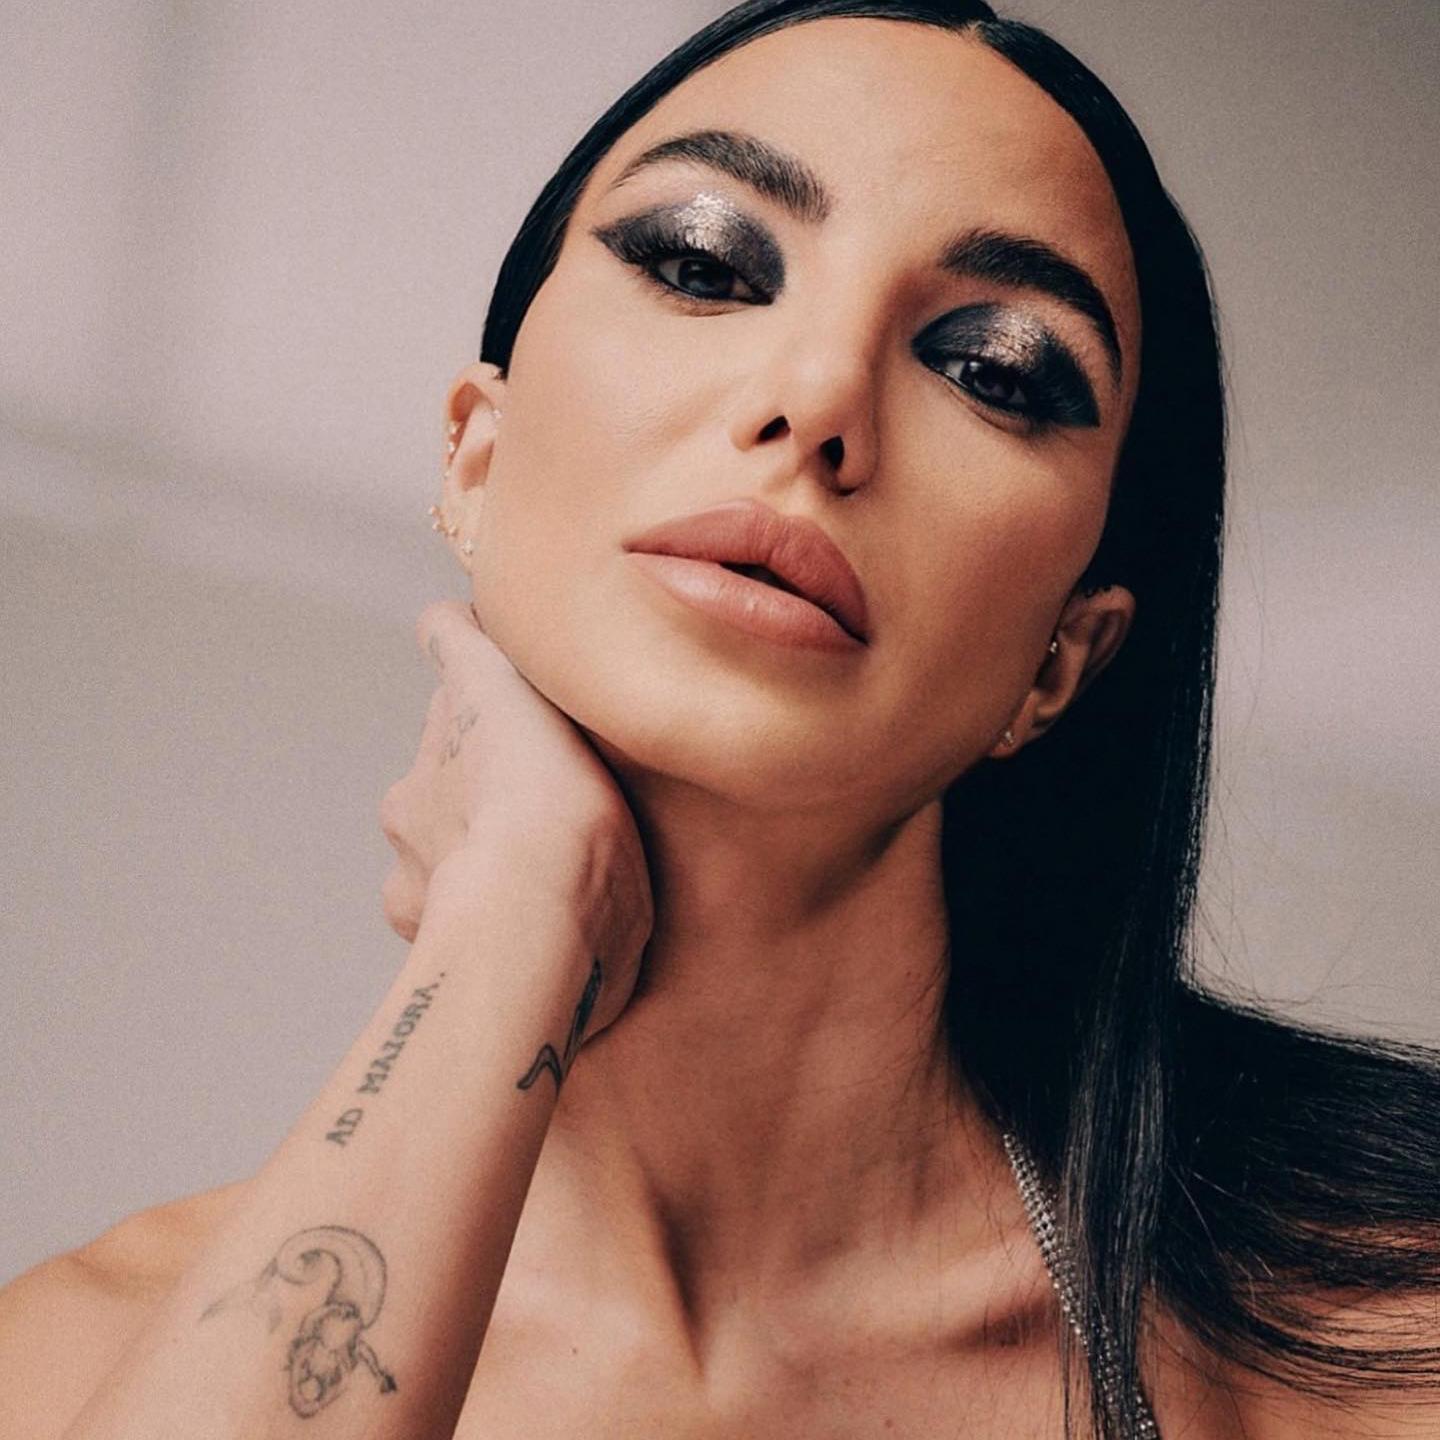 La influencer Chiara Biasi posa con los ojos muy maquillados en un tono metalizado y una mano apoyada sobre el cuello con tatuajes en el brazo